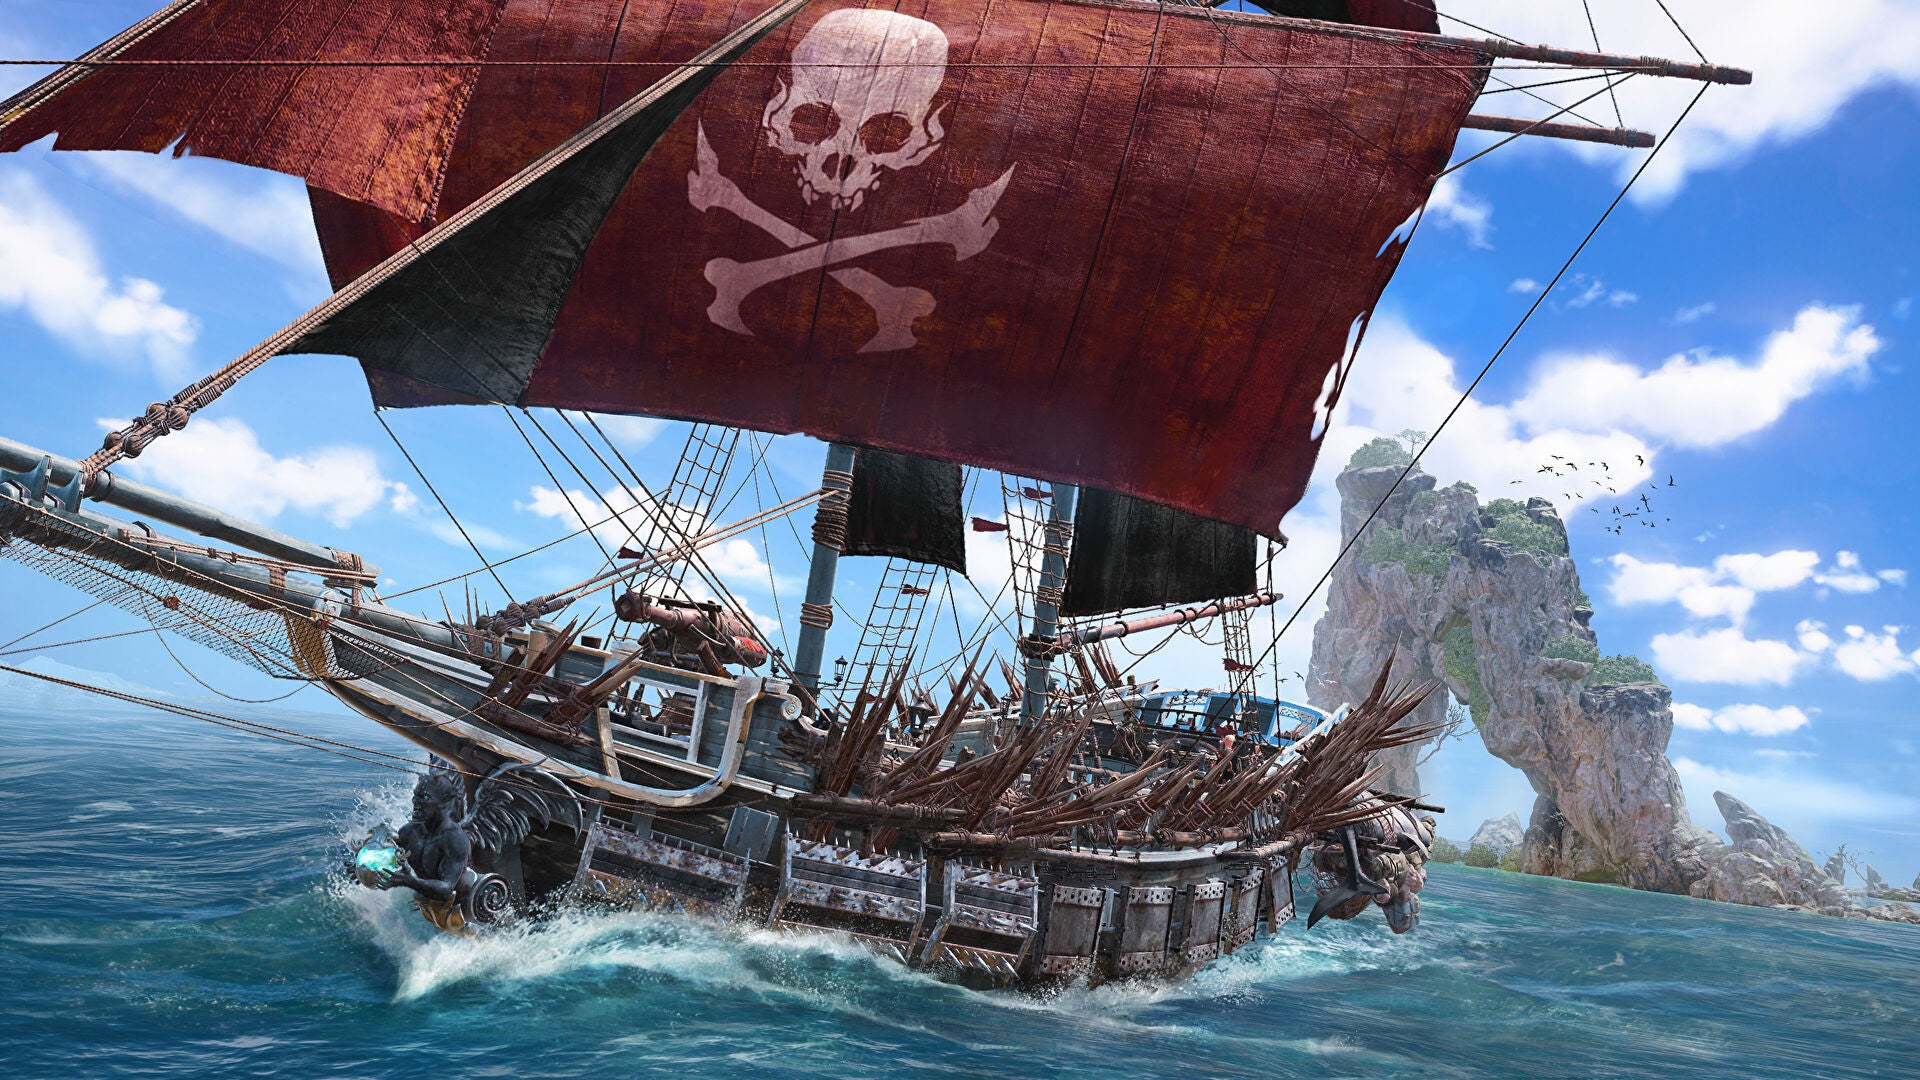 Une image promotionnelle pour Skull and Bones montrant un grand navire en bois aux voiles écarlates naviguant à toute vitesse à travers l'océan sous un ciel bleu vif.